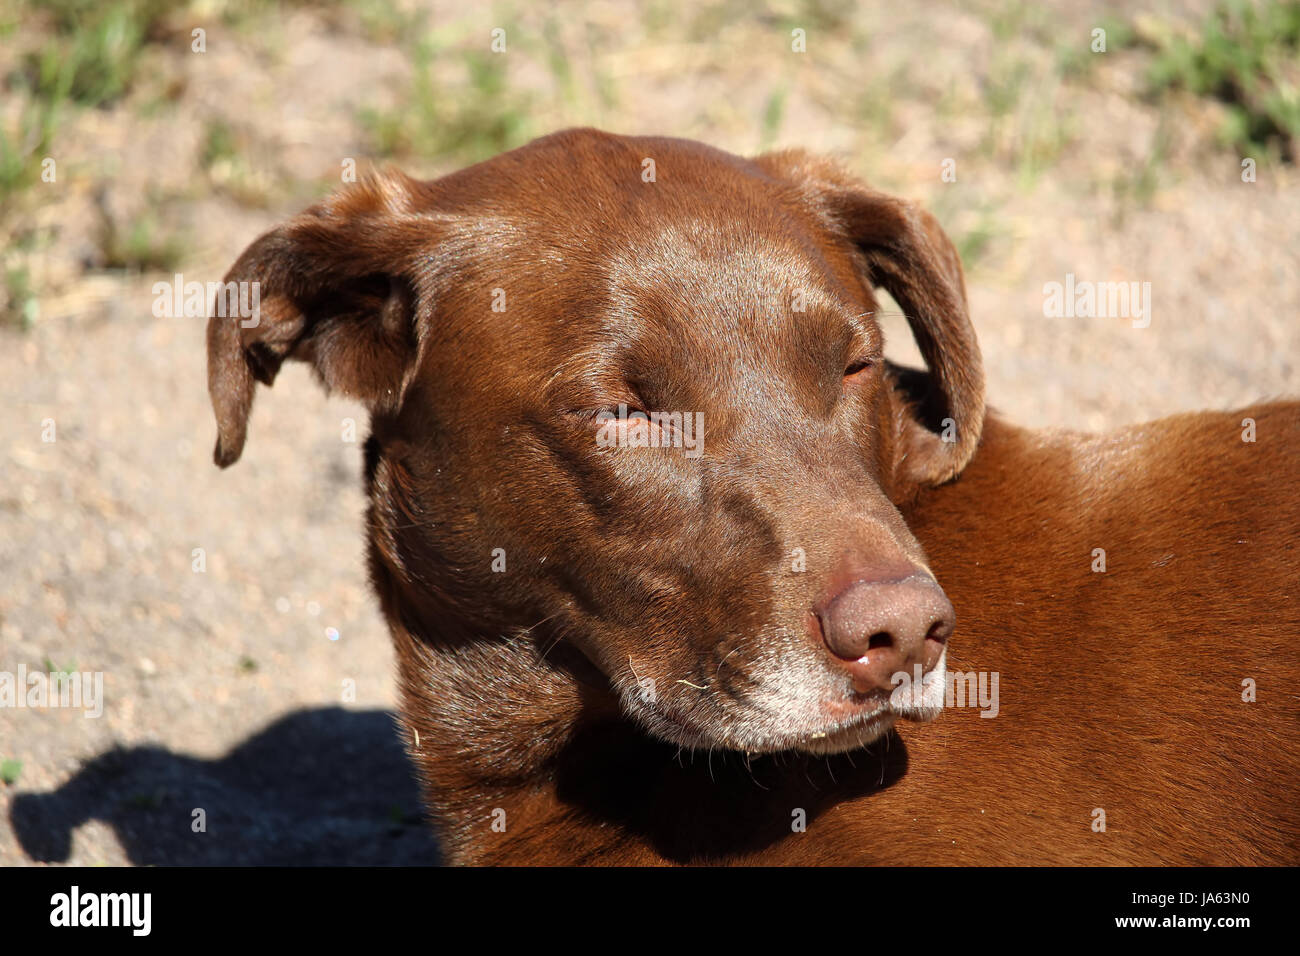 Cane con la faccia gonfia immagini e fotografie stock ad alta risoluzione -  Alamy